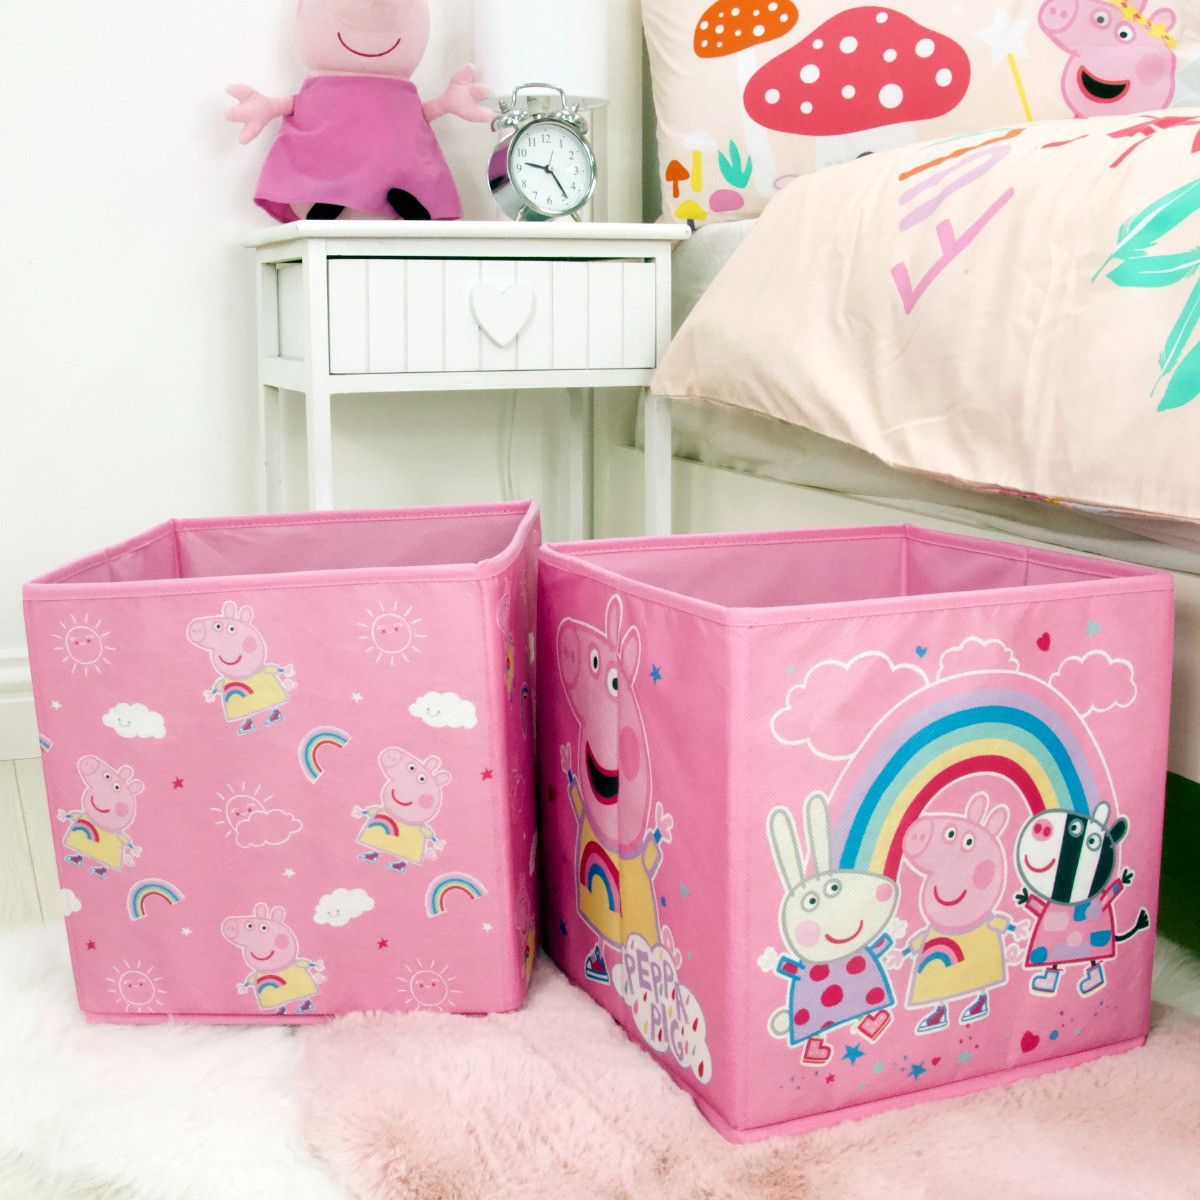 Peppa Pig Storage Box, Pink - 2 Pack>